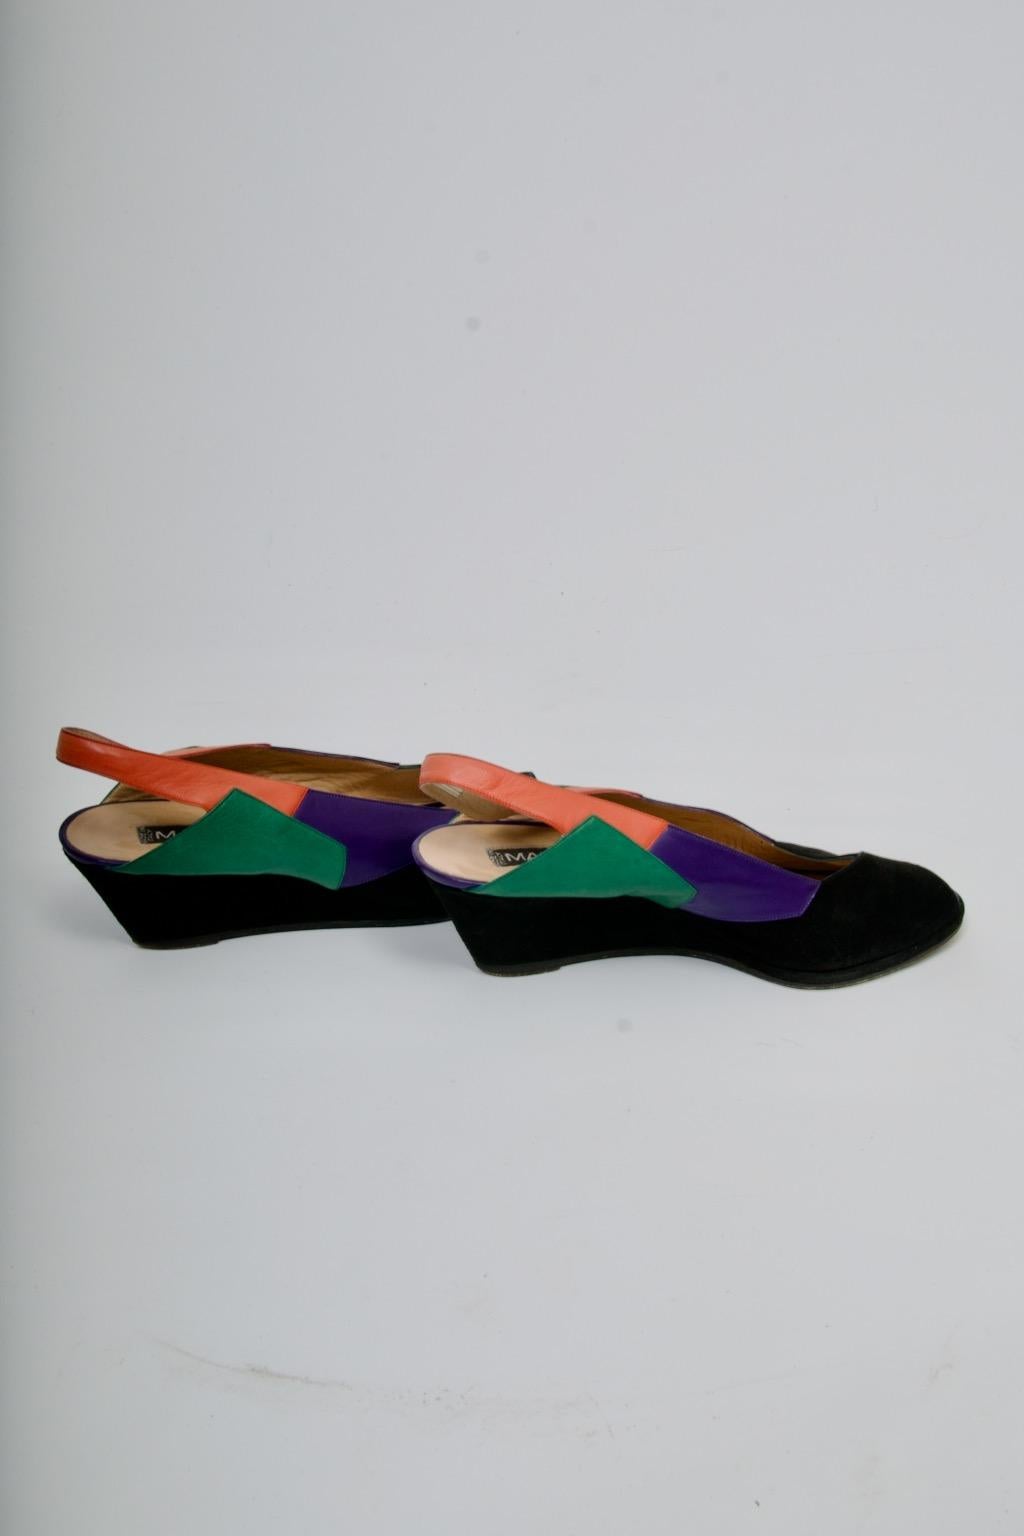 Les chaussures de Maud Frizon ont incarné le style des années 1980, et ces chaussures sont révélatrices de son design créatif. Confectionnées en daim noir, elles présentent un talon compensé, un bout ouvert et une empeigne en forme de V. L'intérêt